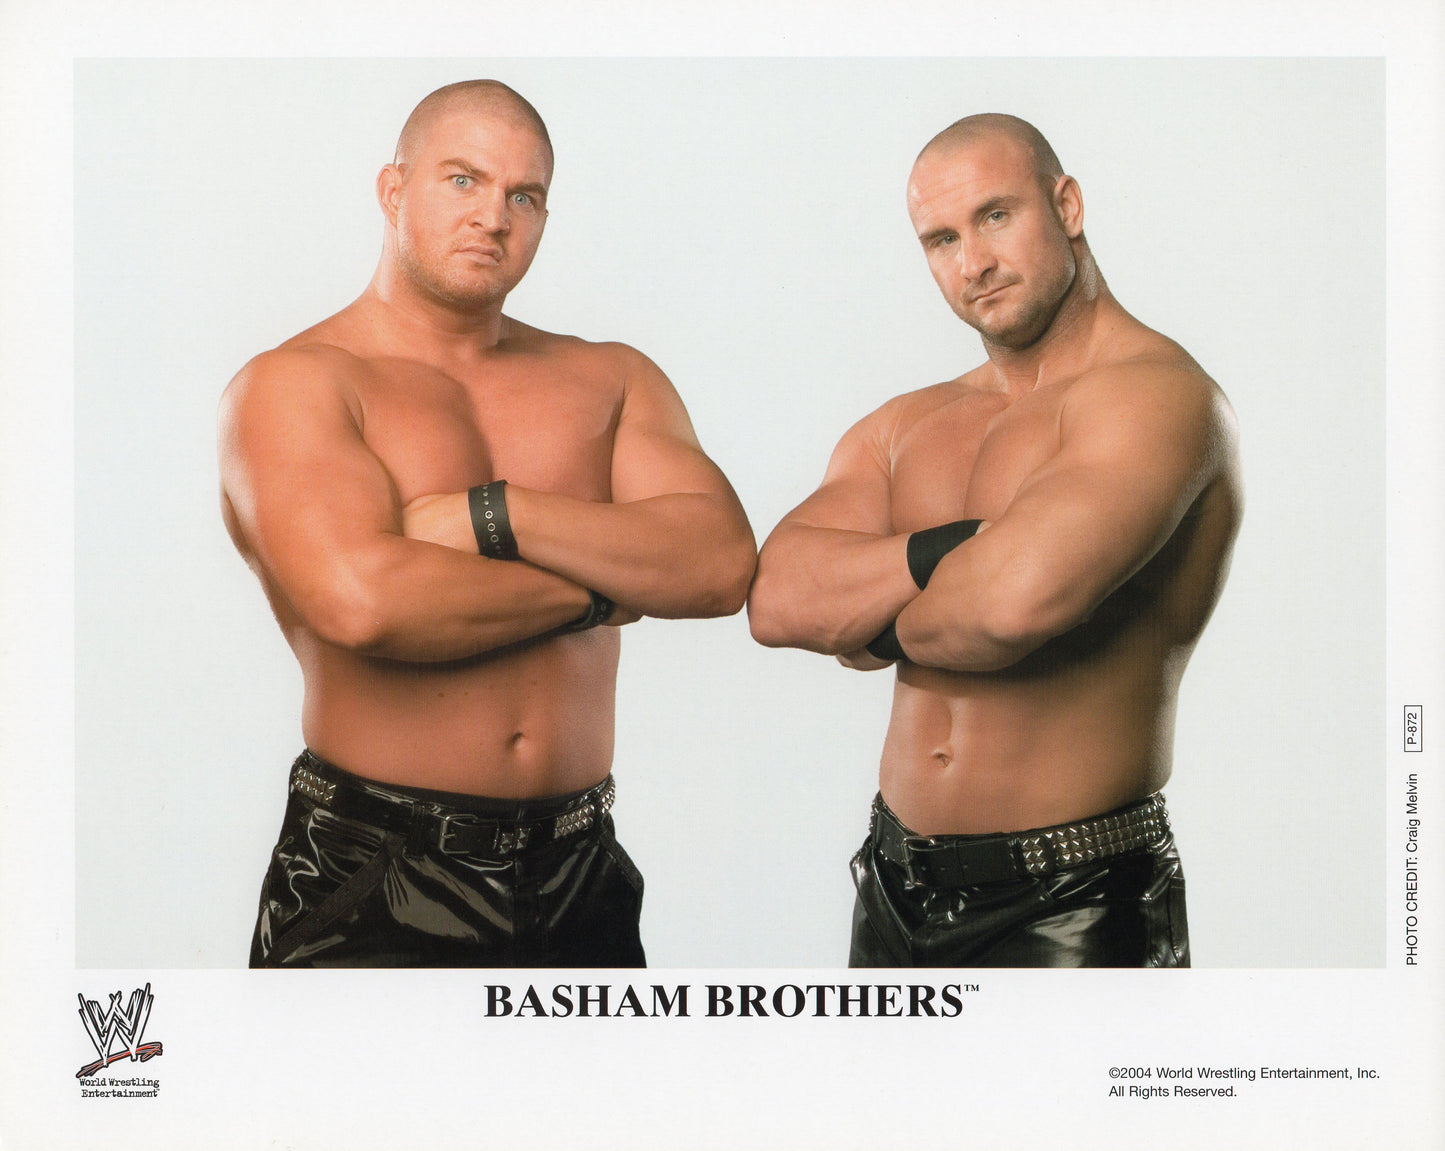 The Basham Brothers WWE Promo Photo